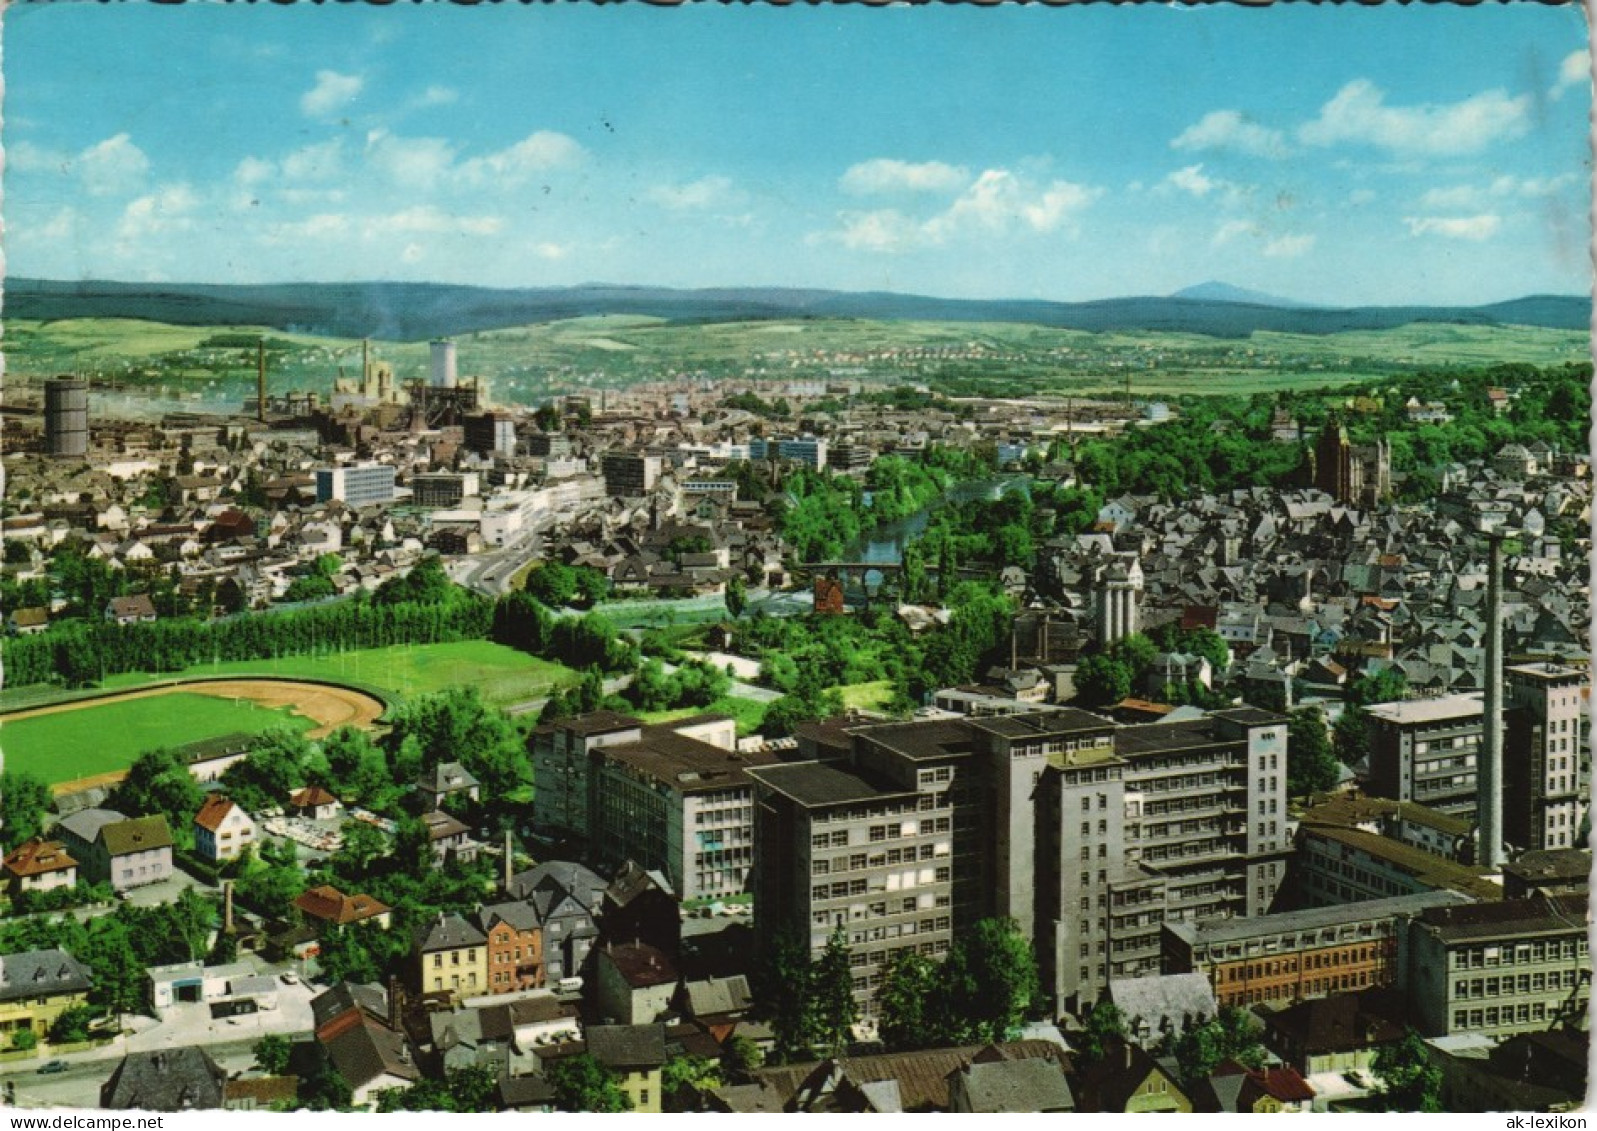 Ansichtskarte Wetzlar Panorama-Gesamansicht 1969 - Wetzlar